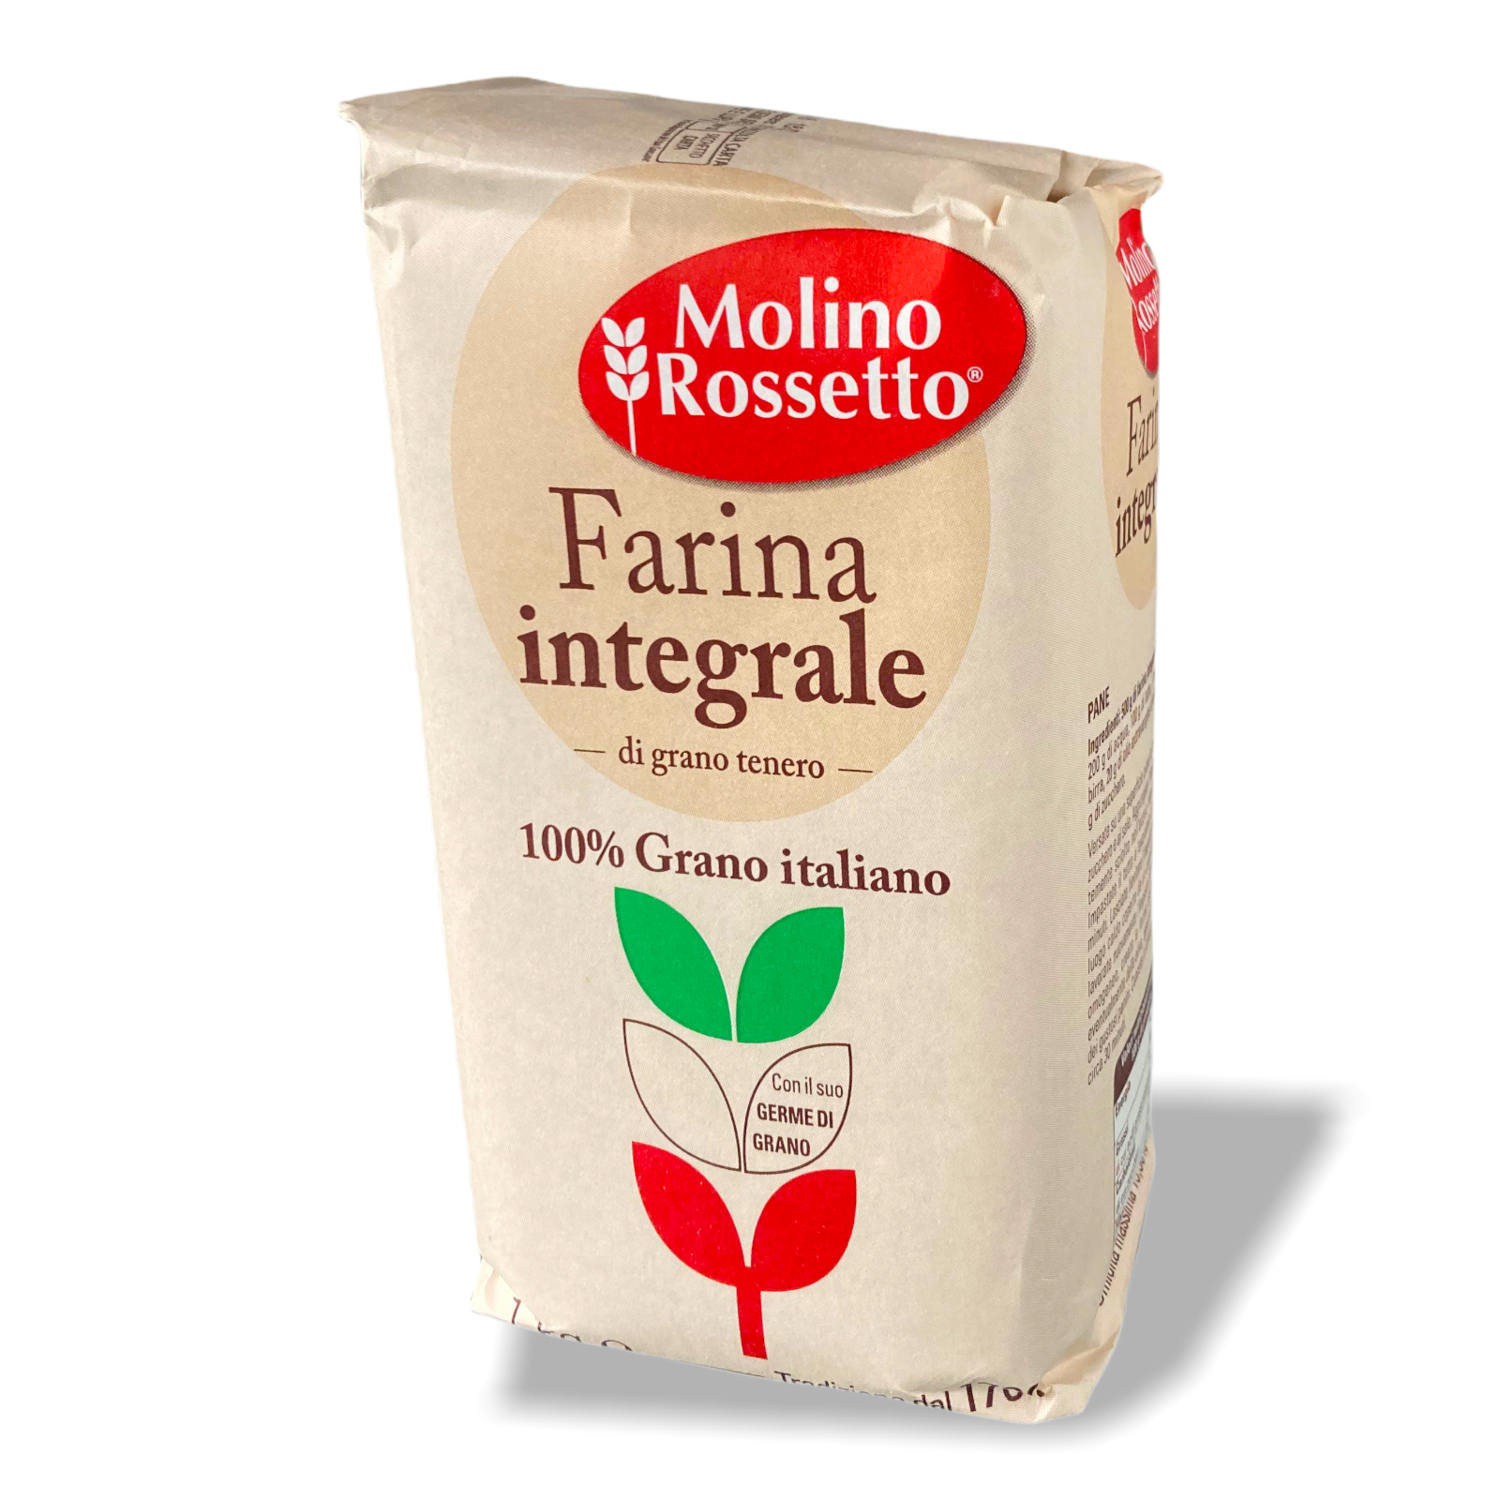 Farina Integrale Di Grano Tenero100% Farina Italiana.Molino Rossetto.